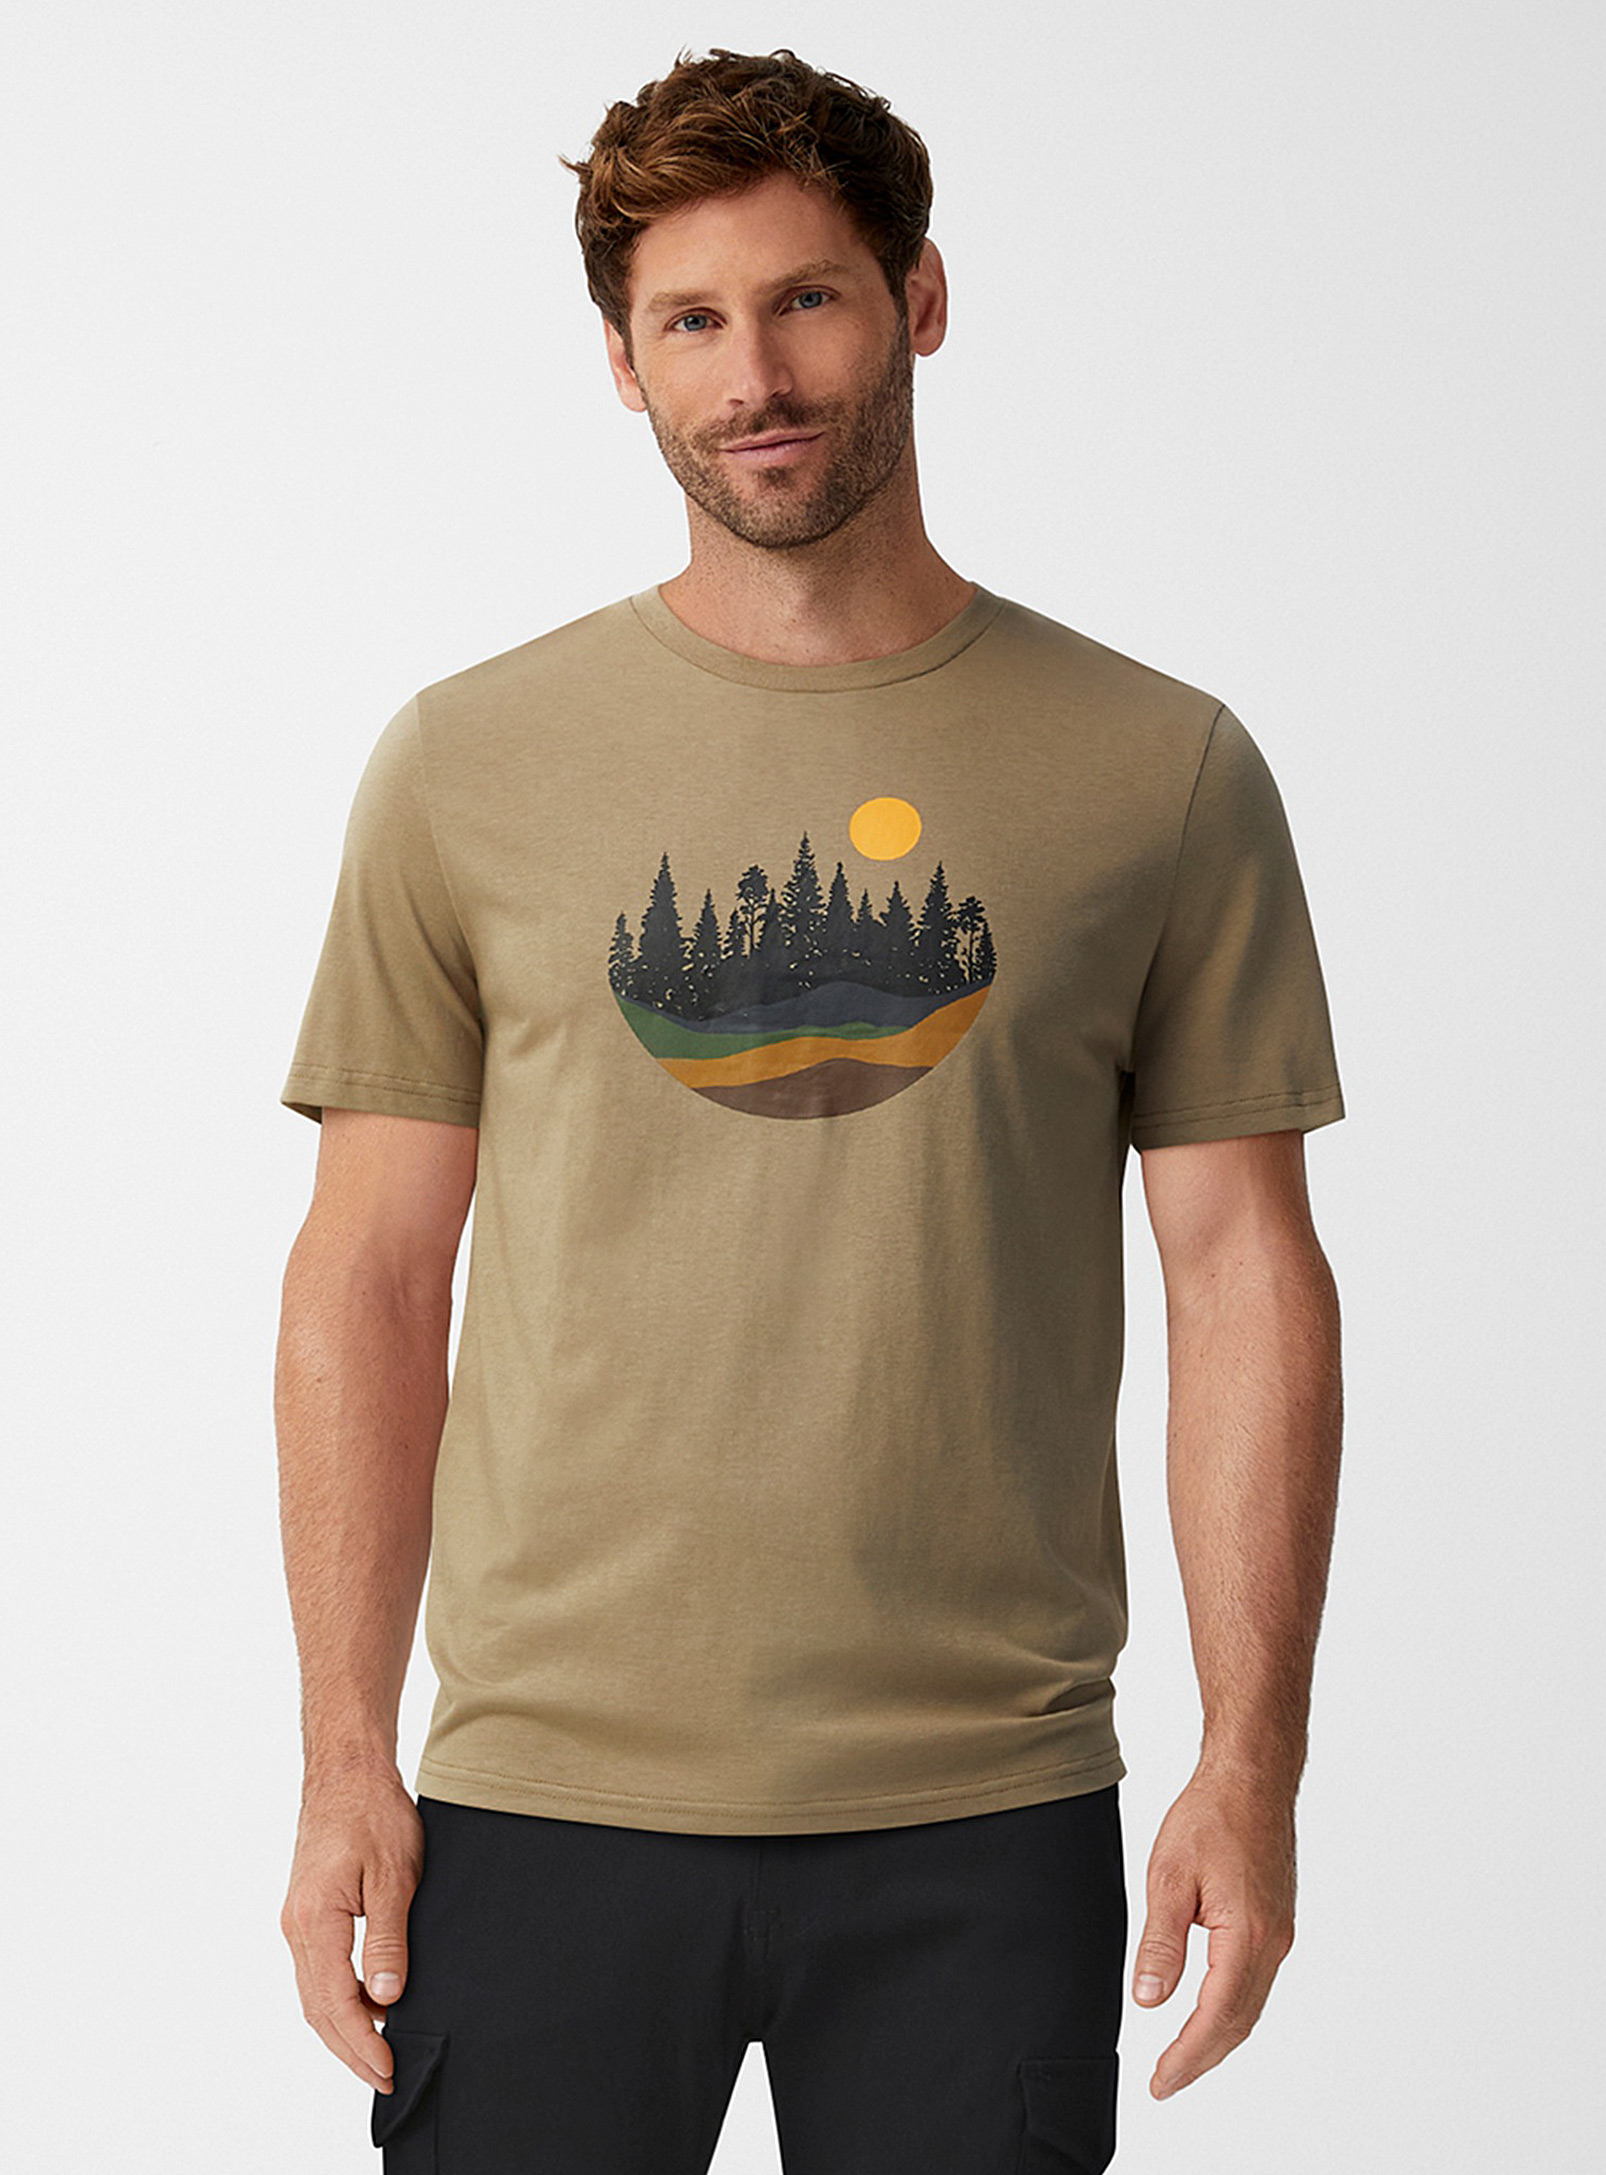 Tentree - Le t-shirt pastille paysage